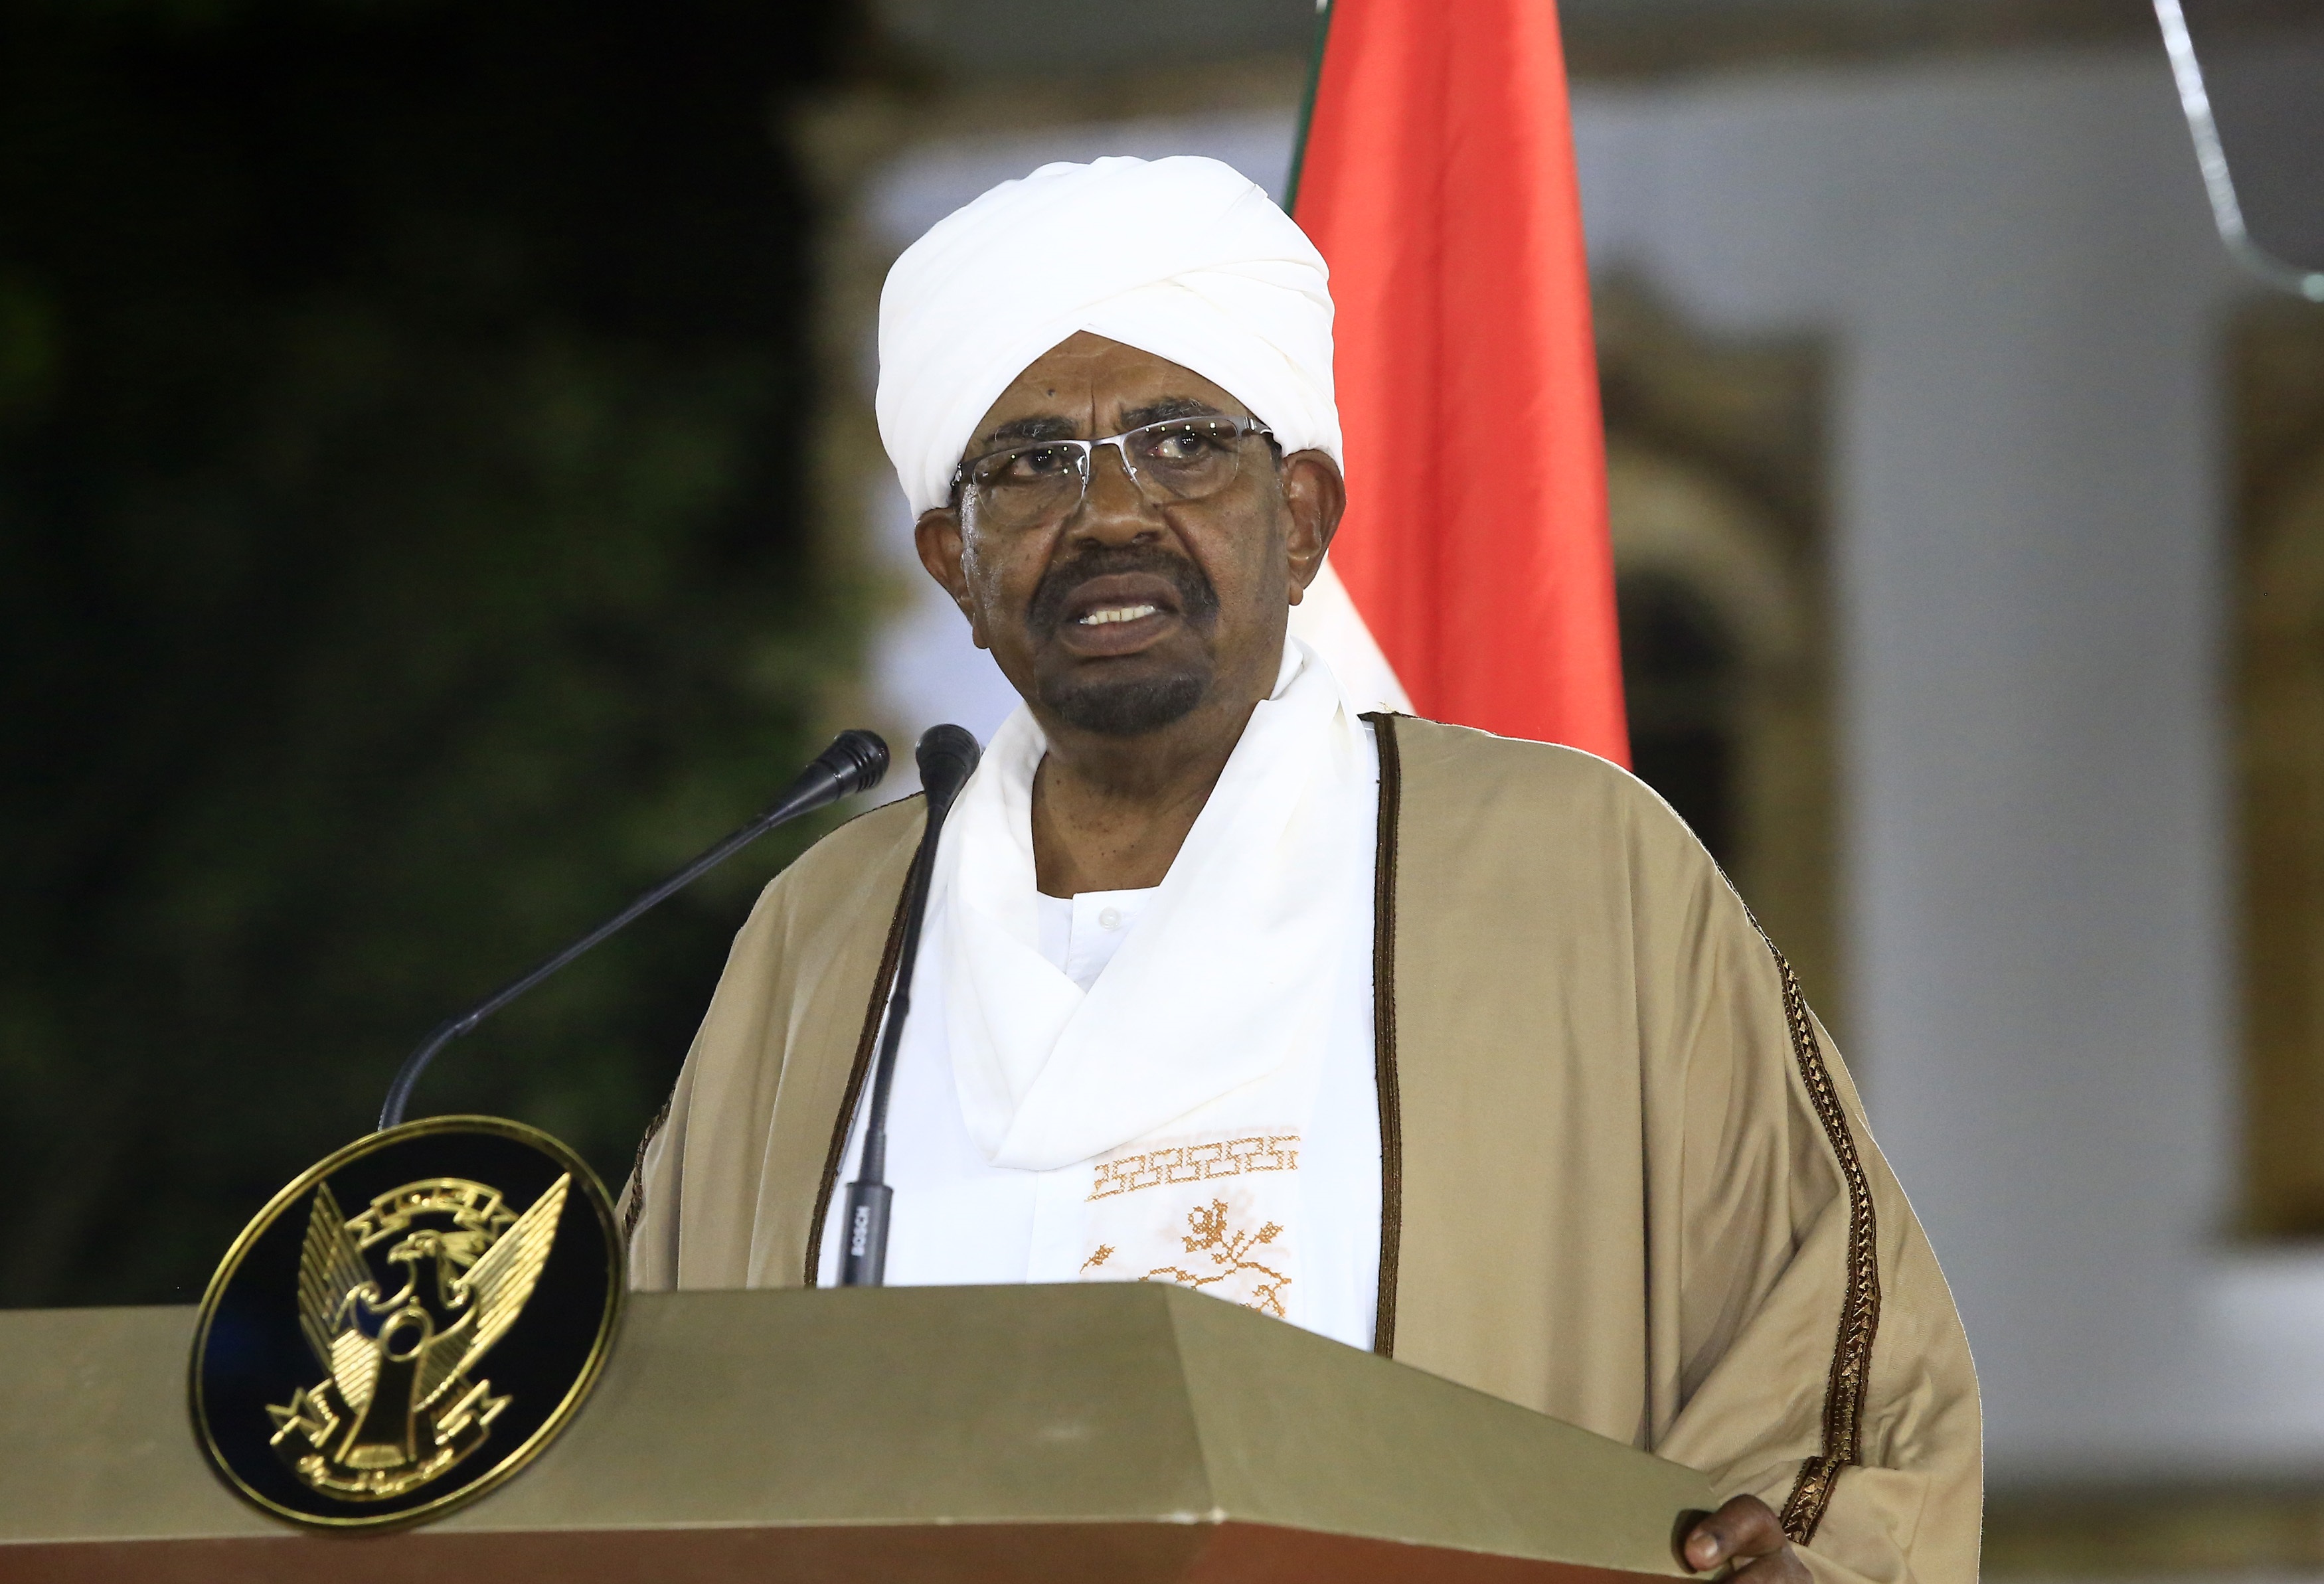 01/01/1970 El expresidente de Sudán Omar Hasán al Bashir
POLITICA AFRICA SUDÁN INTERNACIONAL
MOHAMED KHIDIR / ZUMA PRESS / CONTACTOPHOTO
